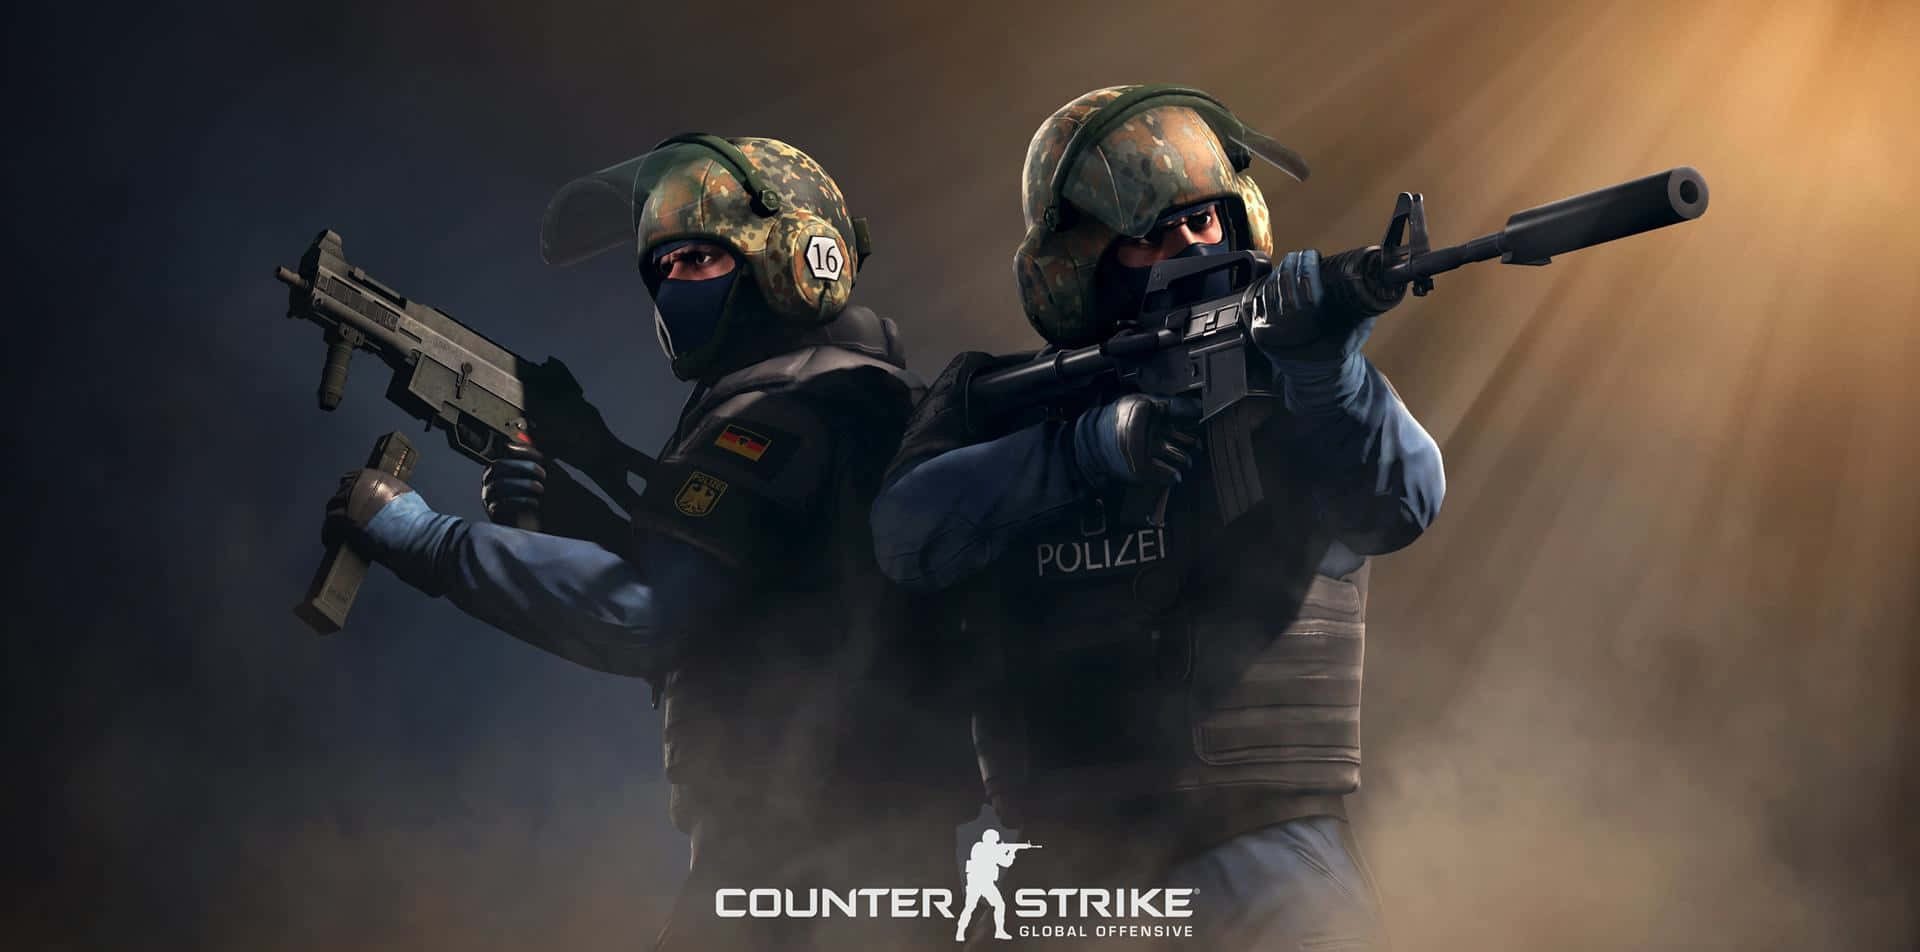 Como jogar Counter-Strike 2 antes do lançamento?